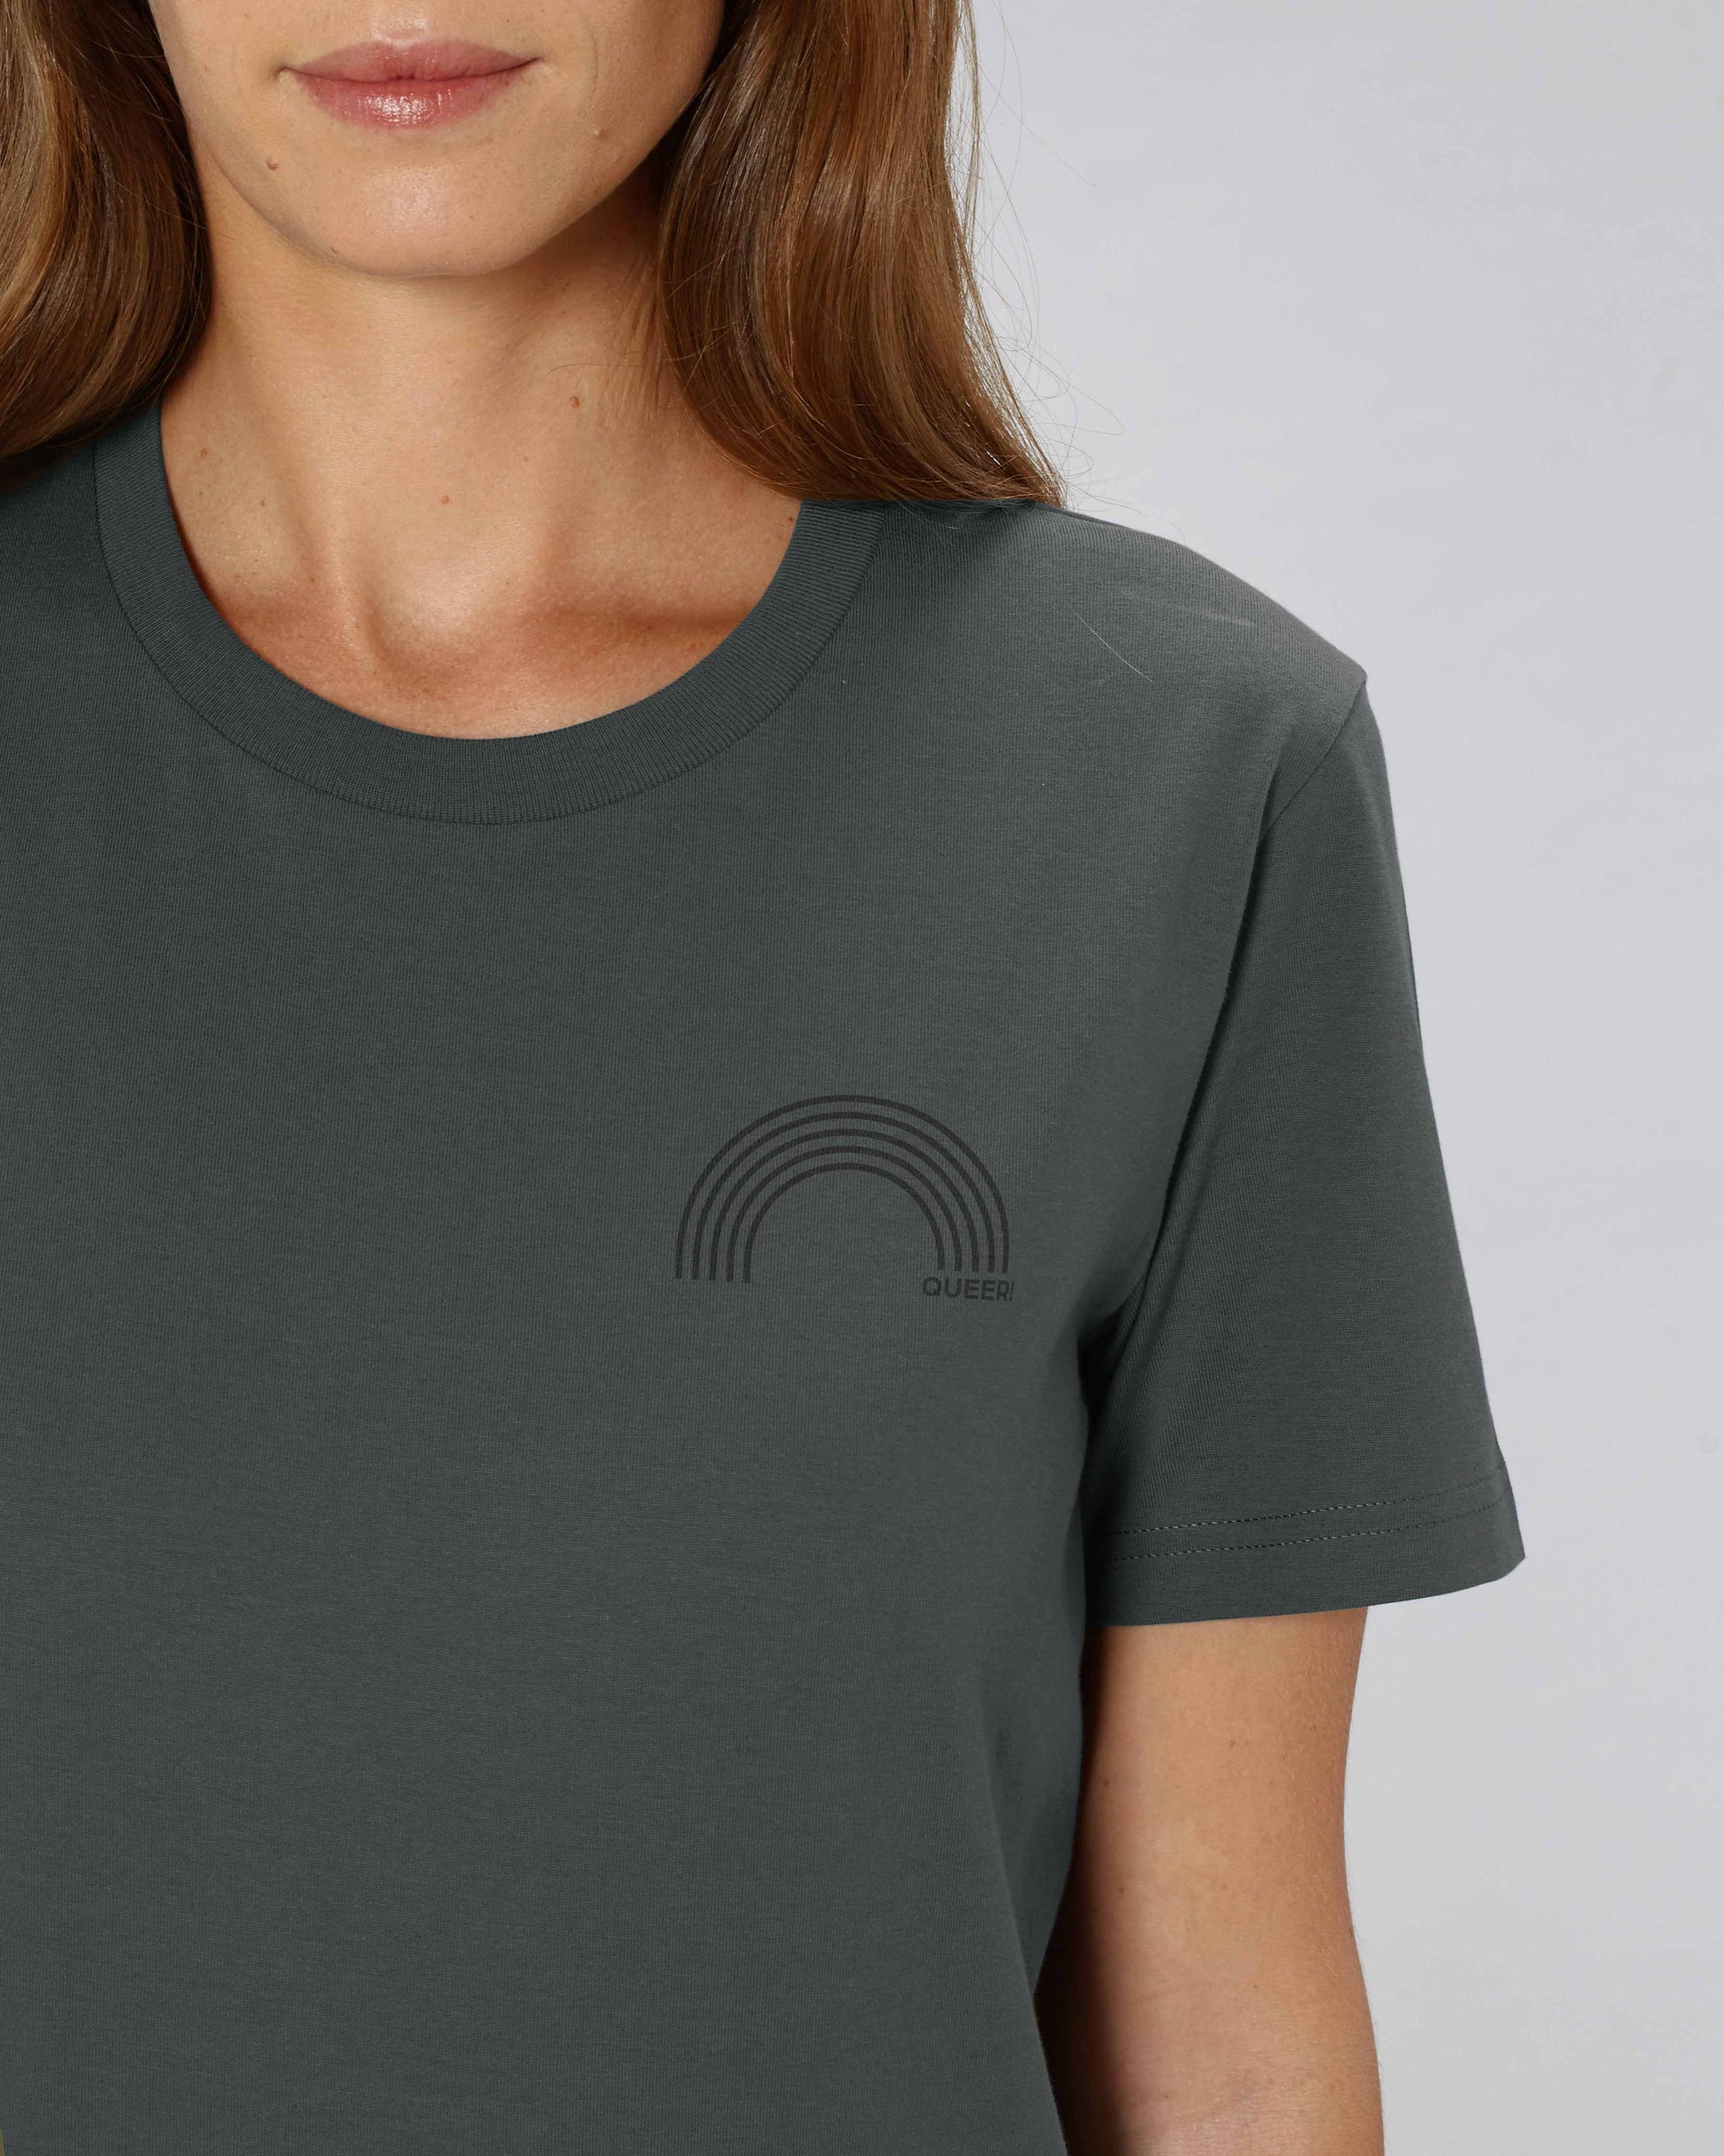 EINHORST® unisex Organic Shirt in "Anthracite" mit dem Motiv "queer Regenbogen" in der Kombination schwarzer Regenbogen mit schwarzer Schrift, Bild von weiblicher Person mit Shirt